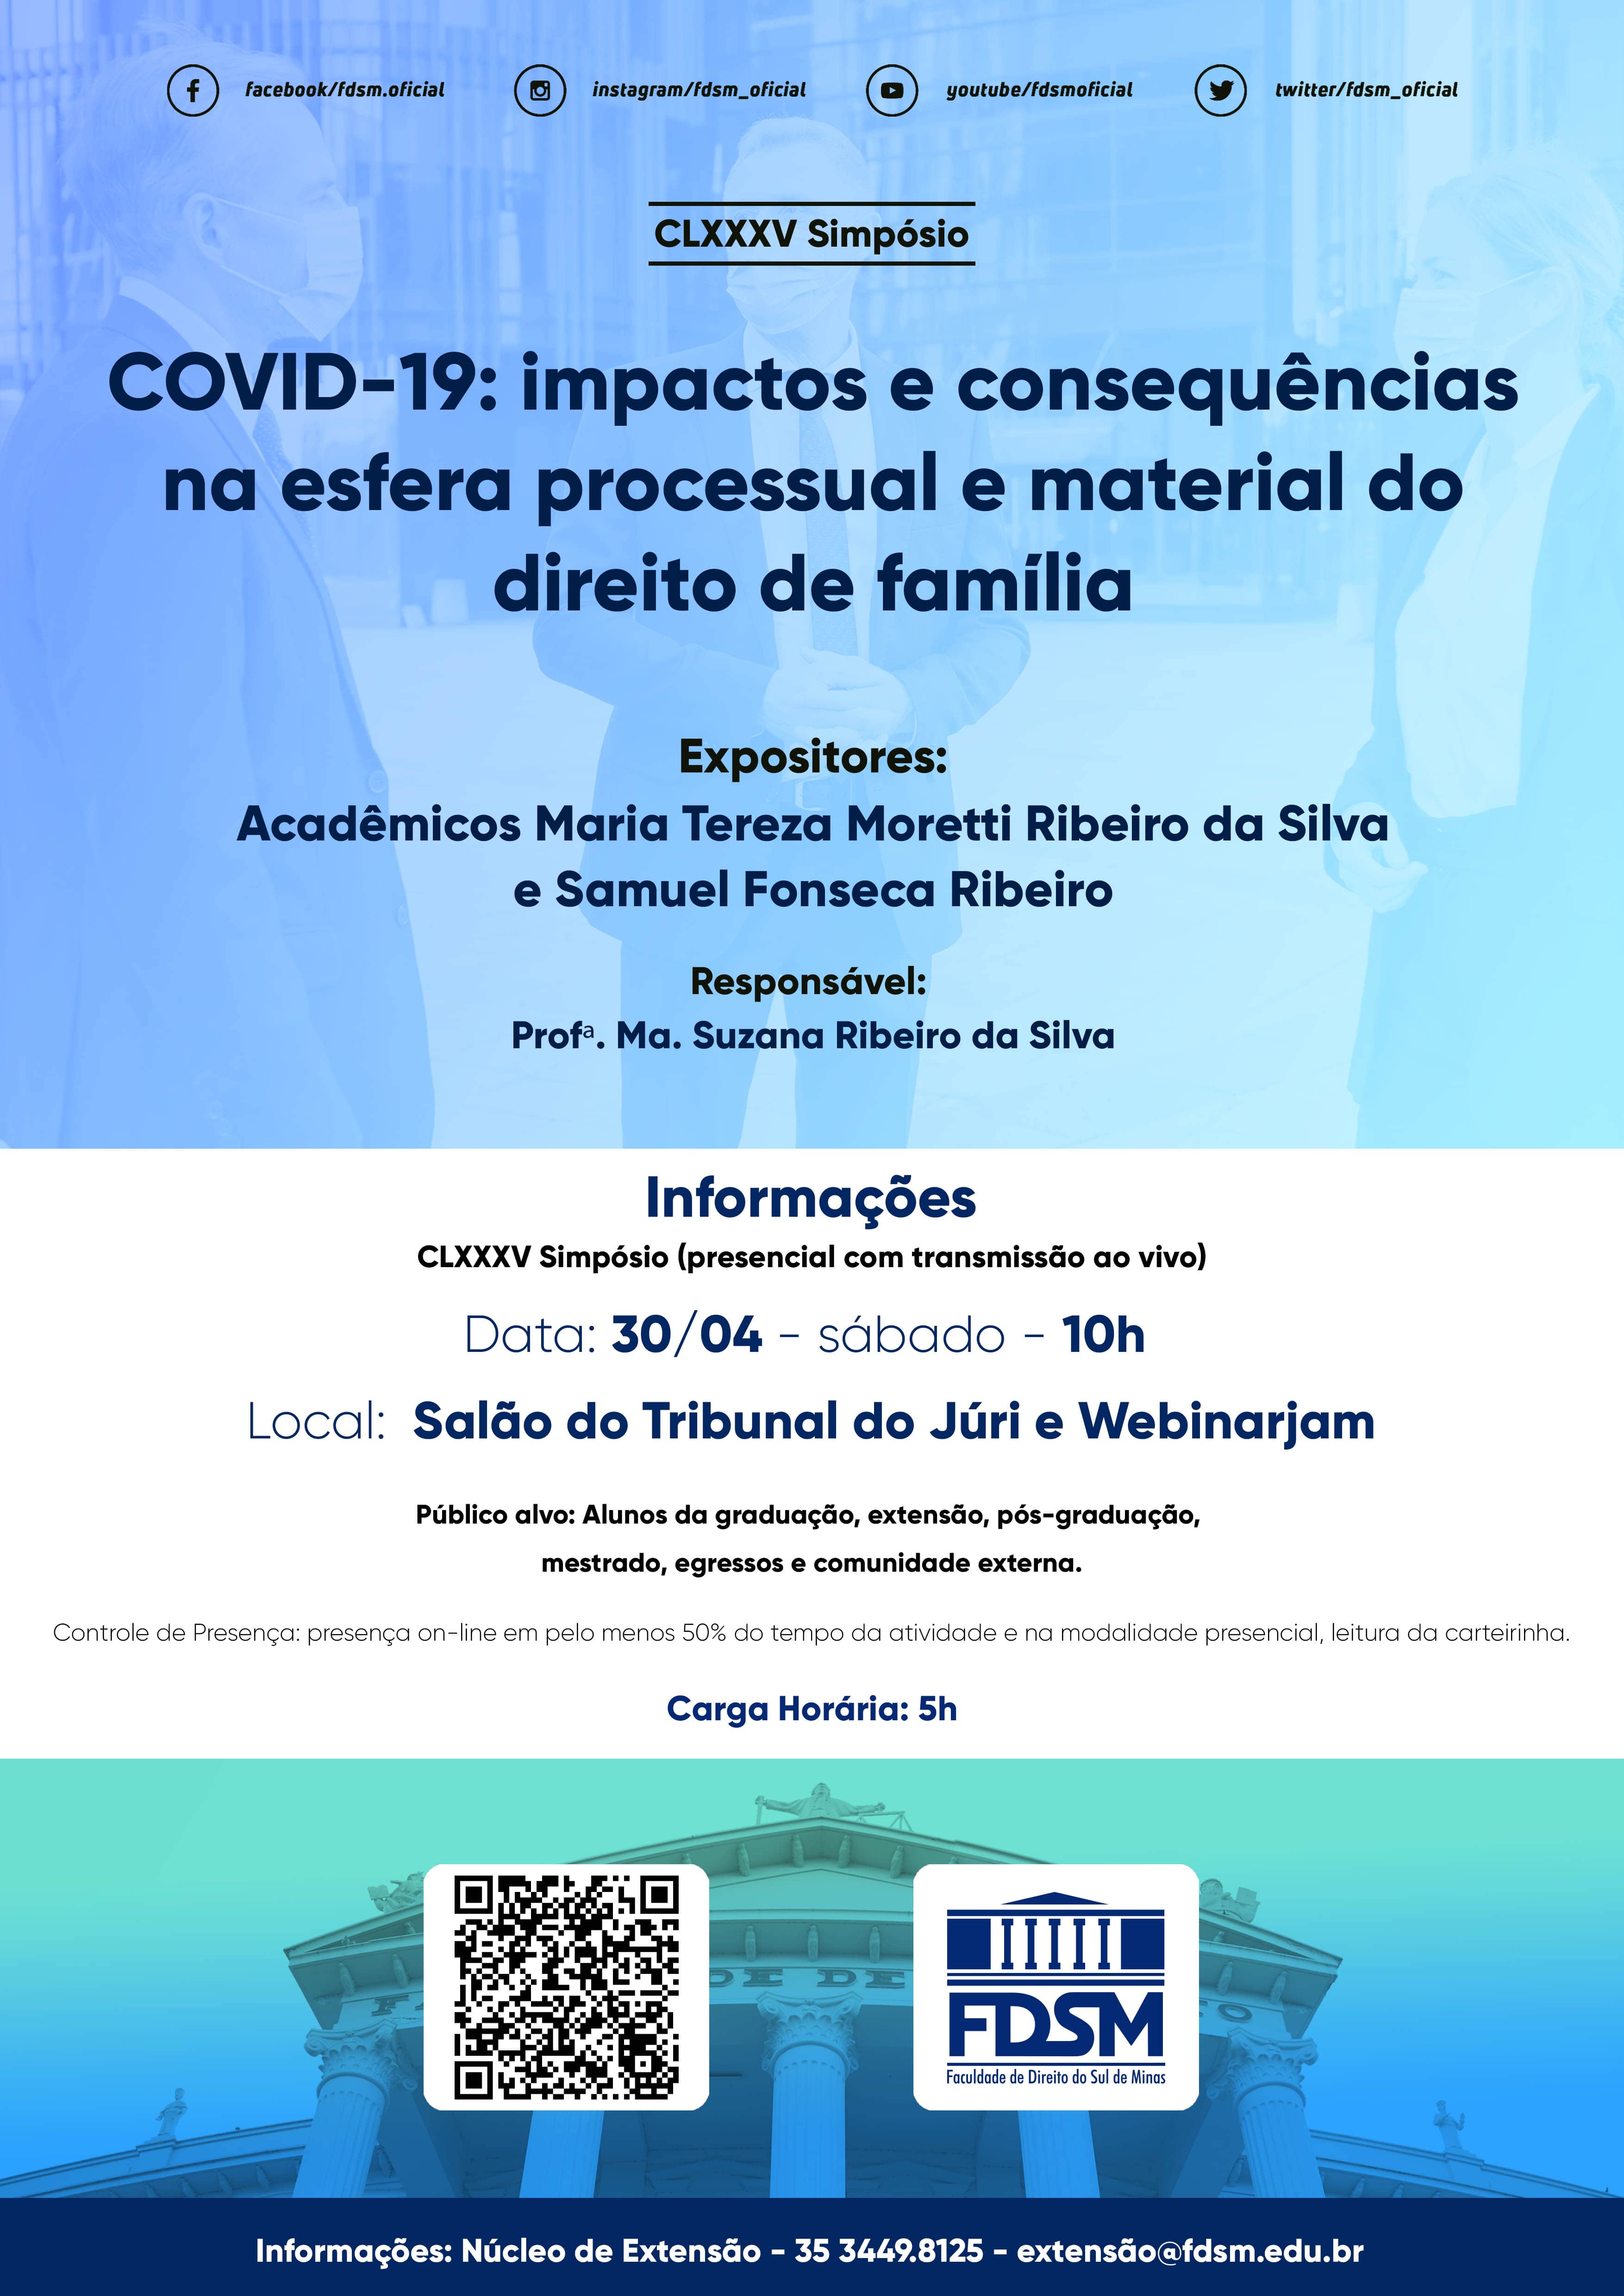 Evento 866 - CLXXXV SIMPÃSIO 'COVID-19: IMPACTOS E CONSEQUÃNCIAS NA ESFERA PROCESSUAL E MATERIAL DO DIREITO DE FAMÃLIA'